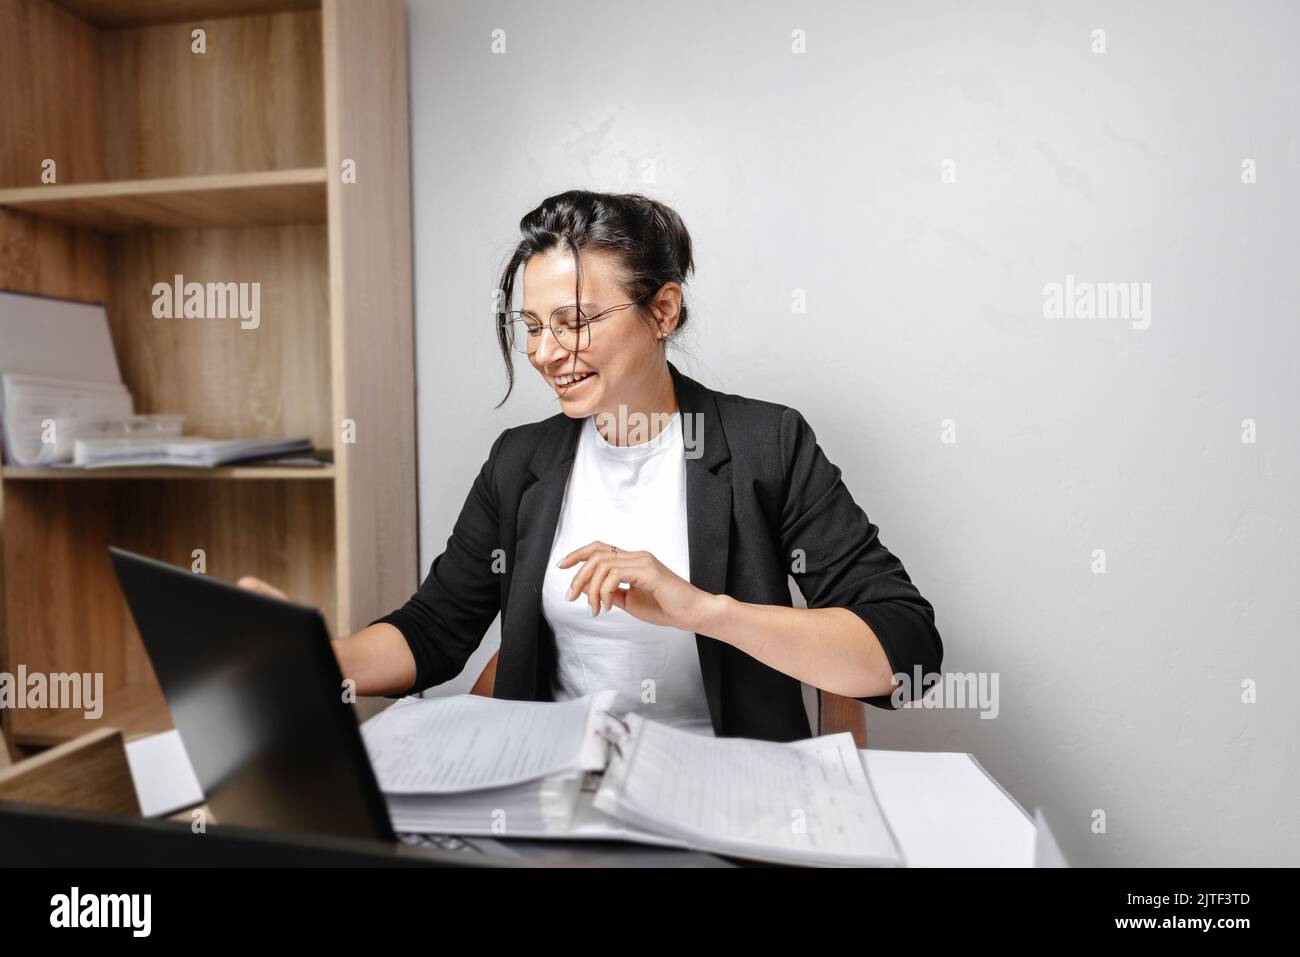 Lächelndes junges Mädchen, das im Büro arbeitet. Fröhlicher, hübscher Student mit gemischter Rasse, der einen Computerbildschirm betrachtet, ein Webinar oder eine Online-Studie anschaut Stockfoto